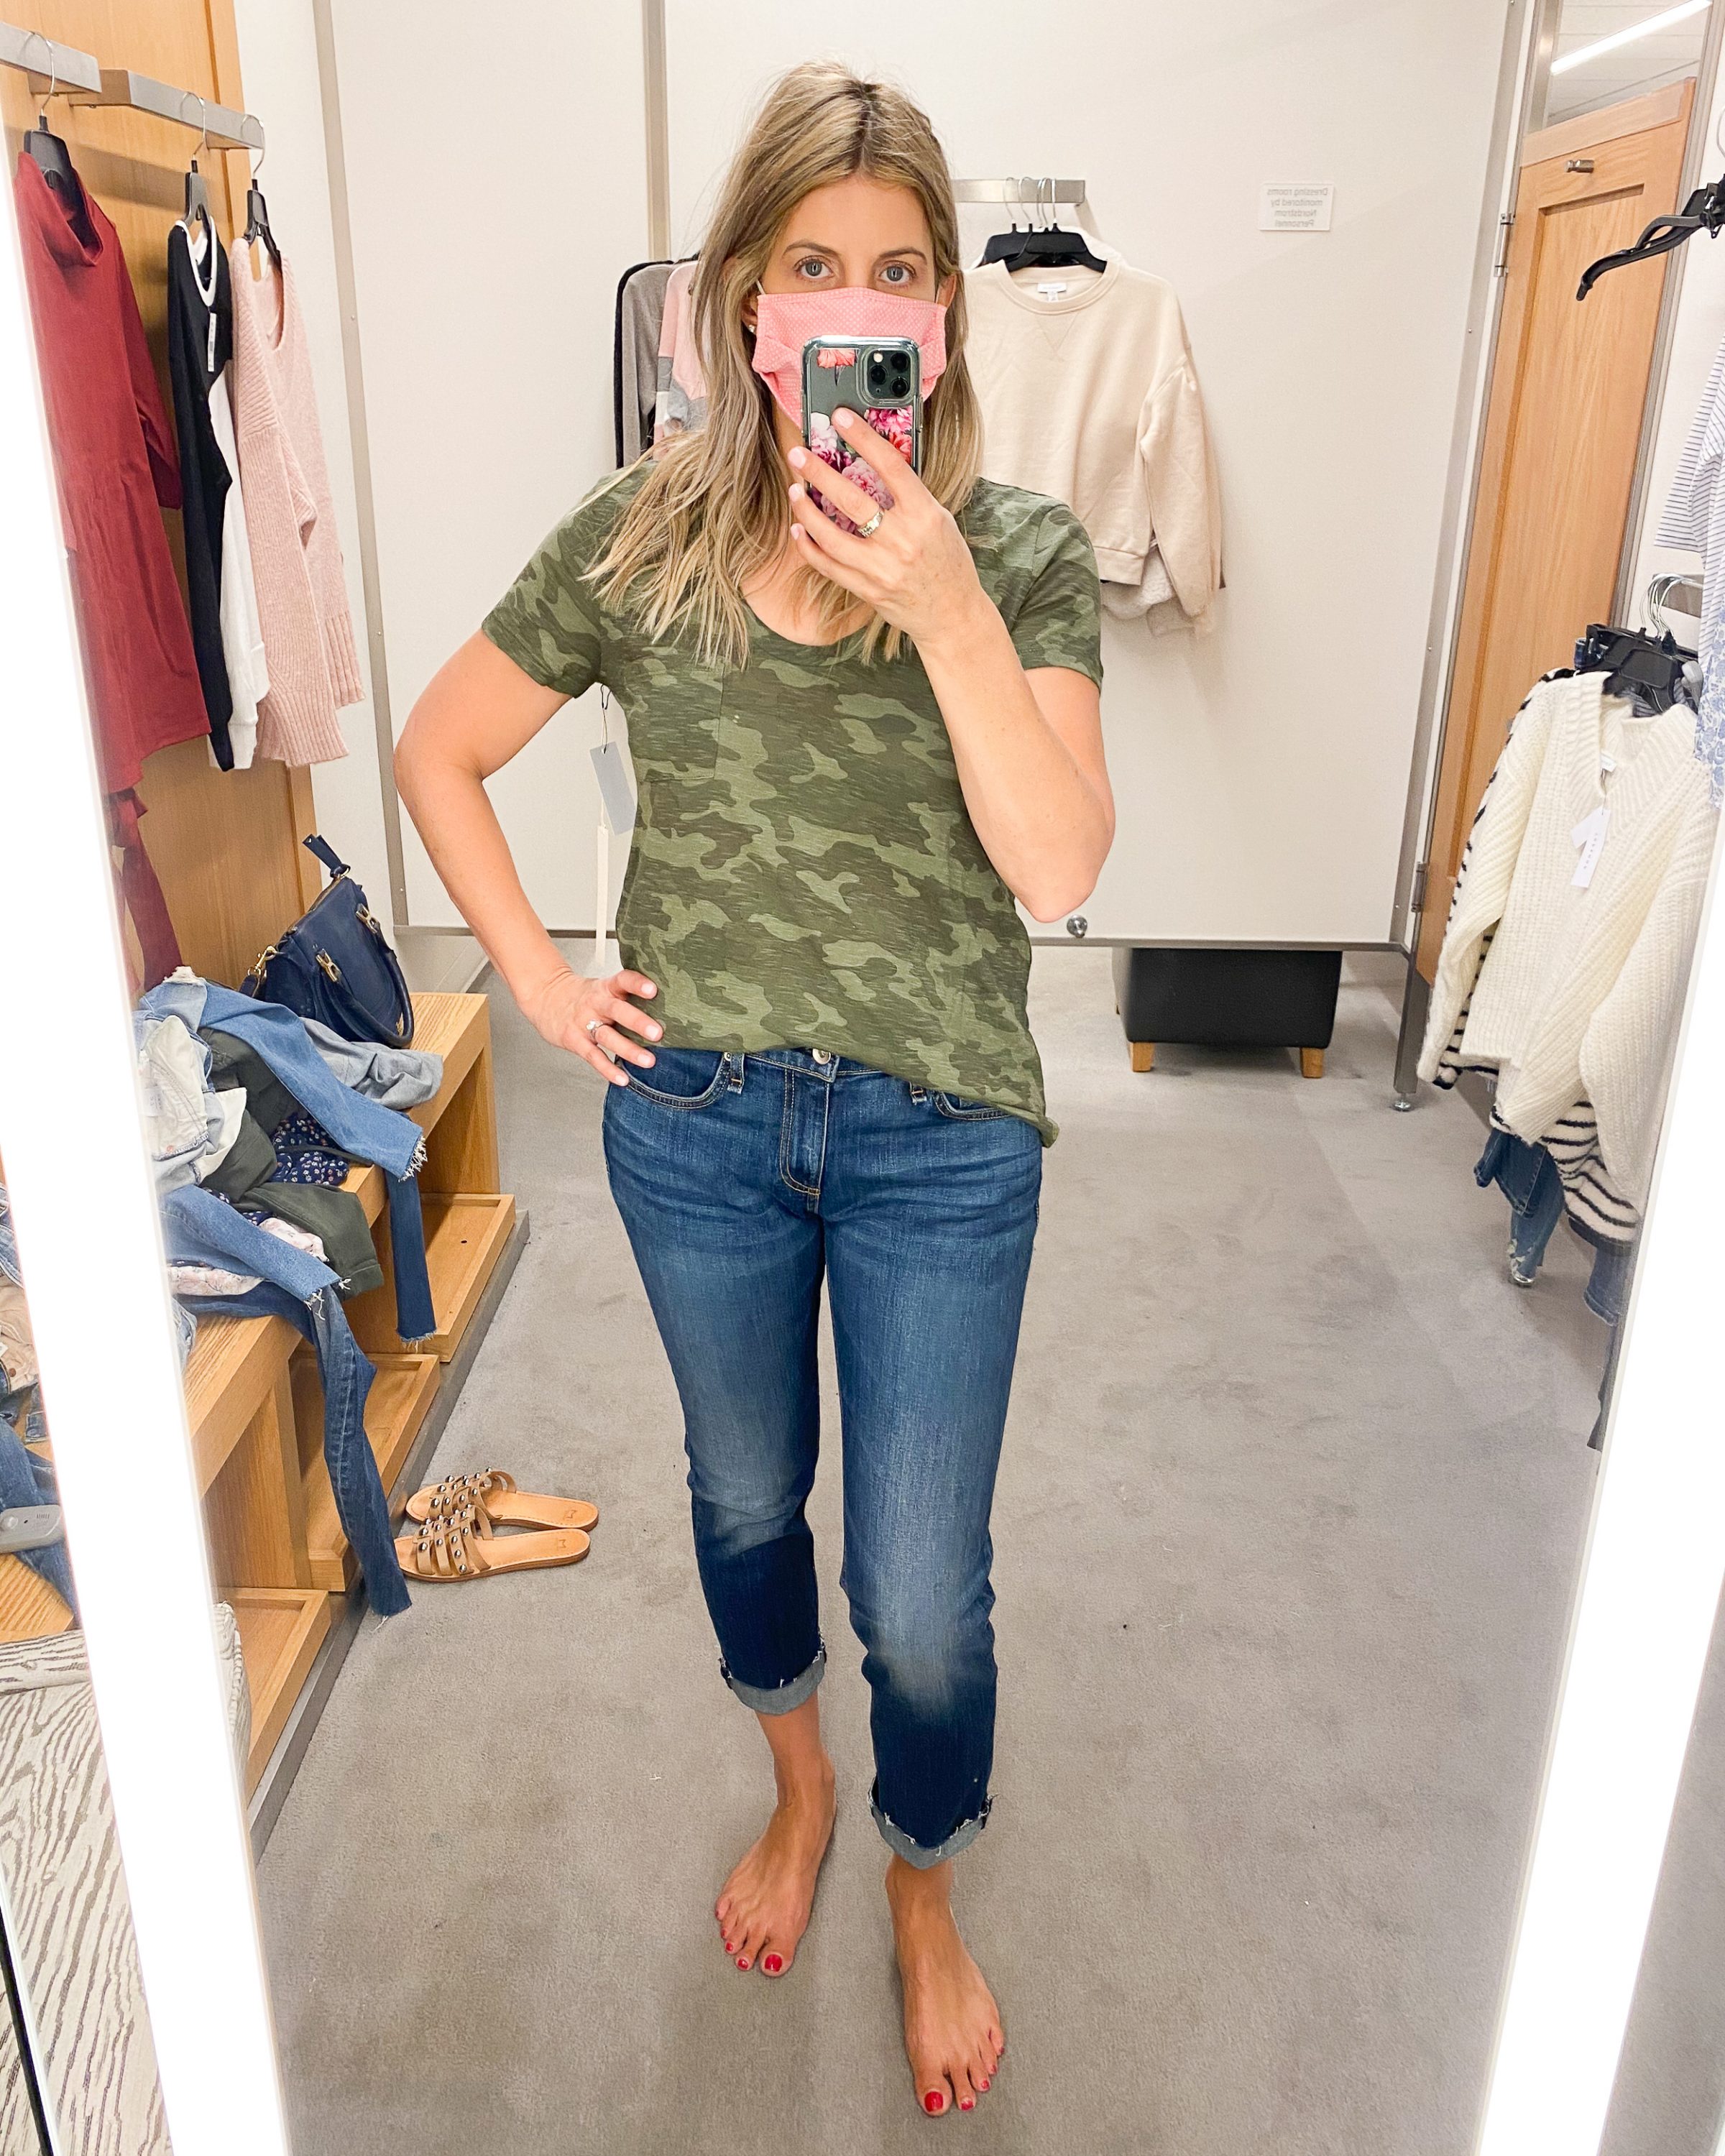 2020 nordstrom anniversary sale dressing room selfies